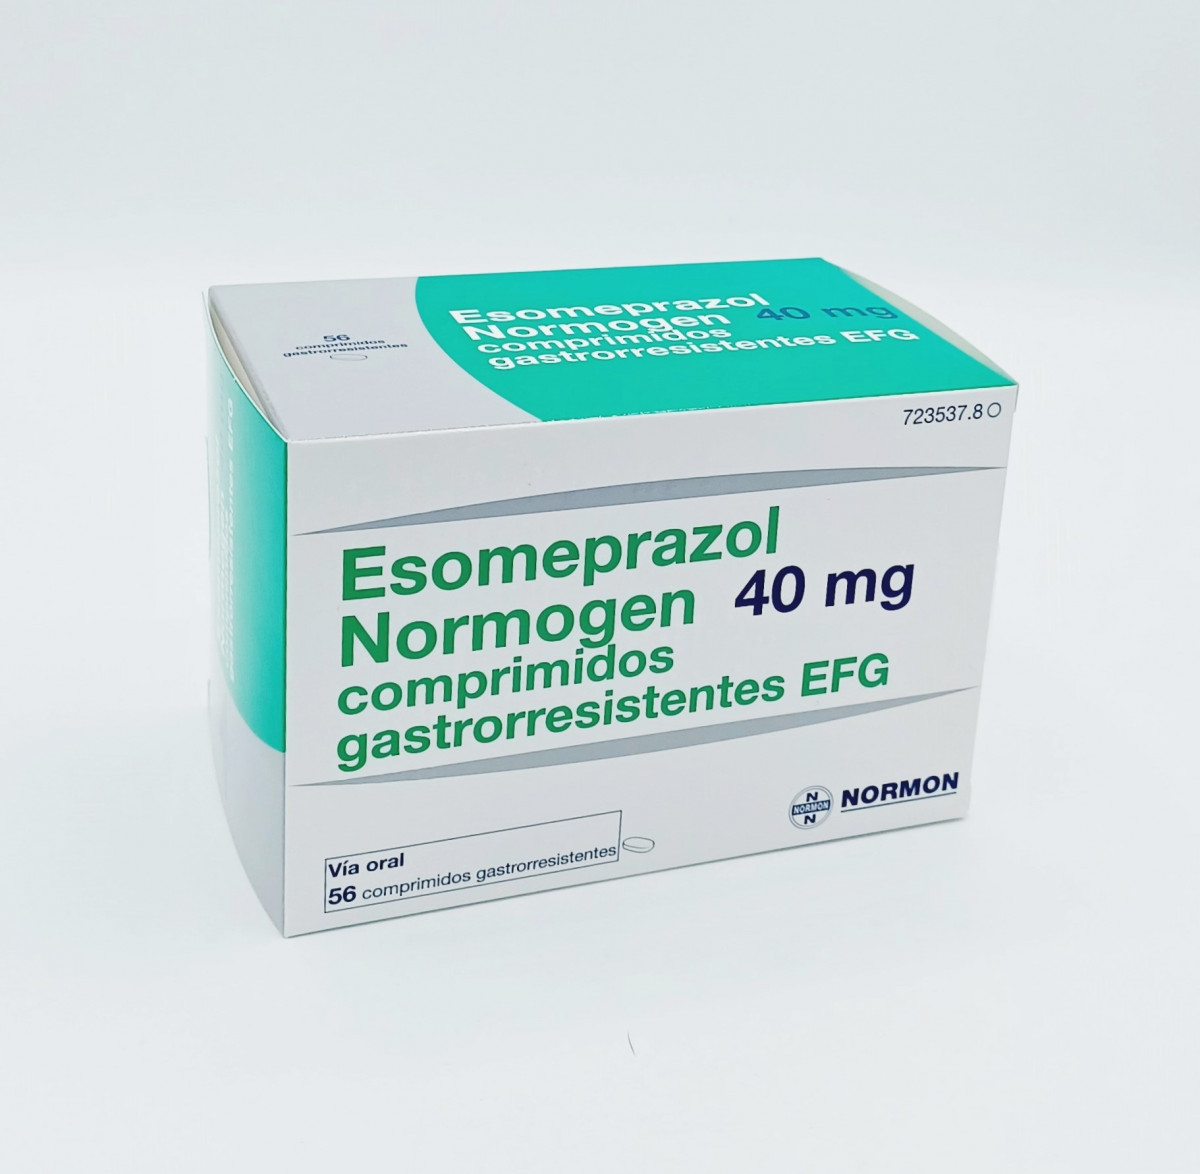 ESOMEPRAZOL NORMOGEN 40 MG COMPRIMIDOS GASTRORRESISTENTES EFG 56 comprimidos (Blister OPA/Al/PE-Al/PE) fotografía del envase.